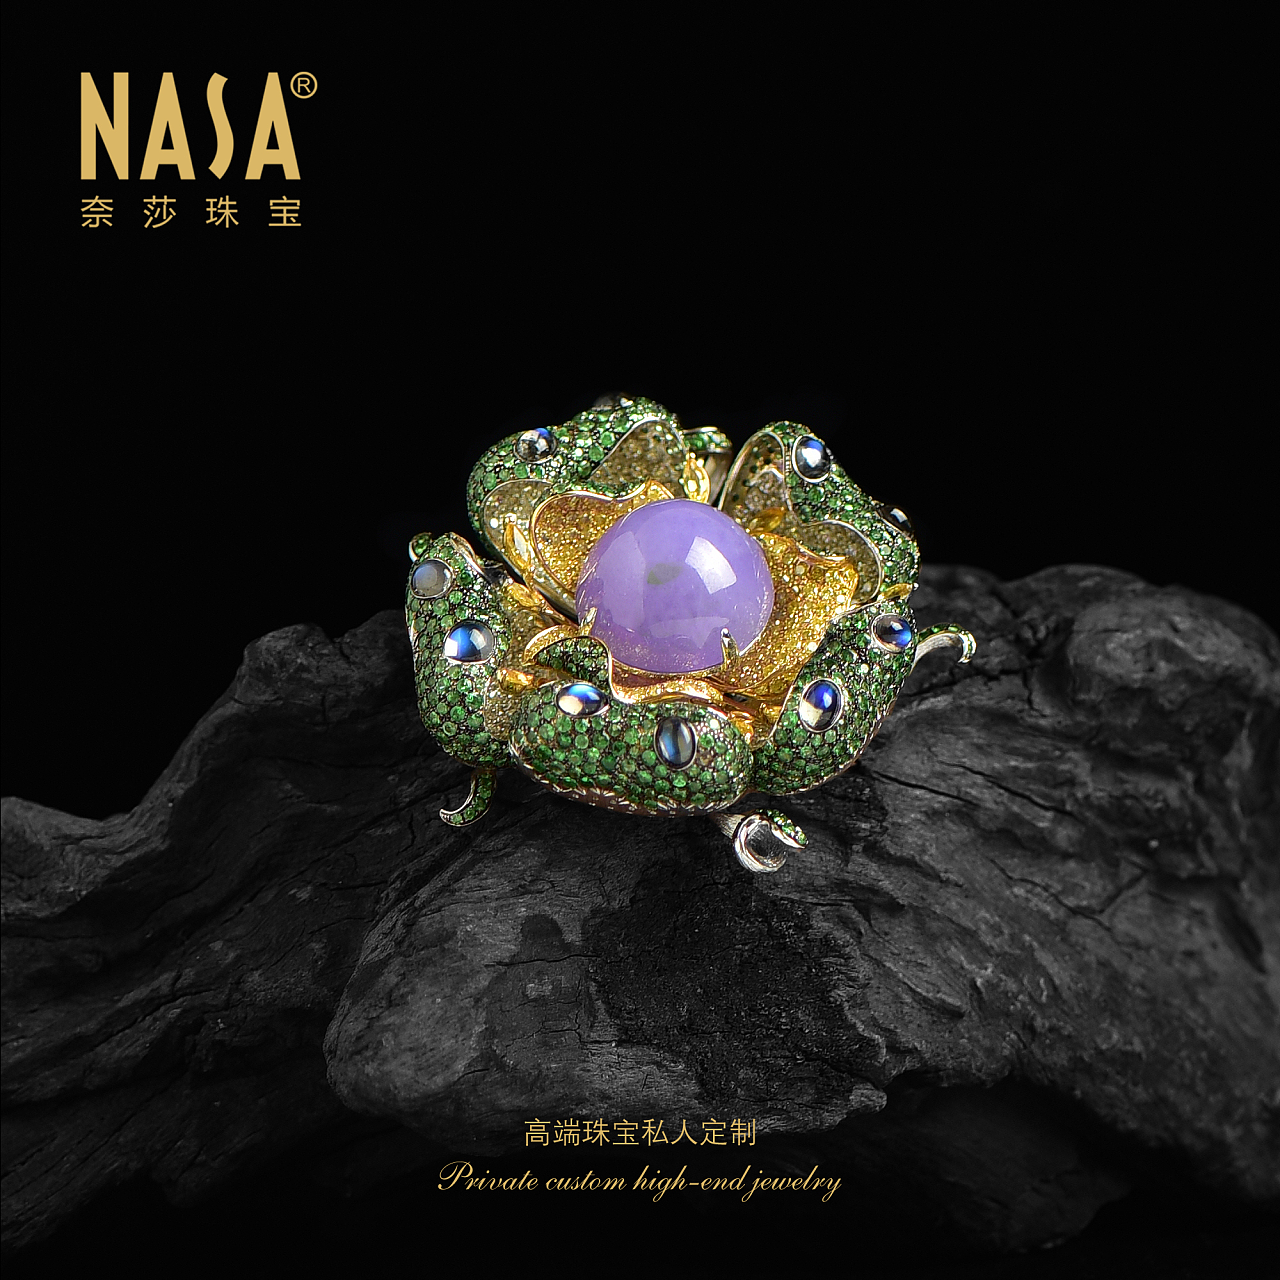 奈莎NASA珠宝高端珠宝私人定制原创设计东方